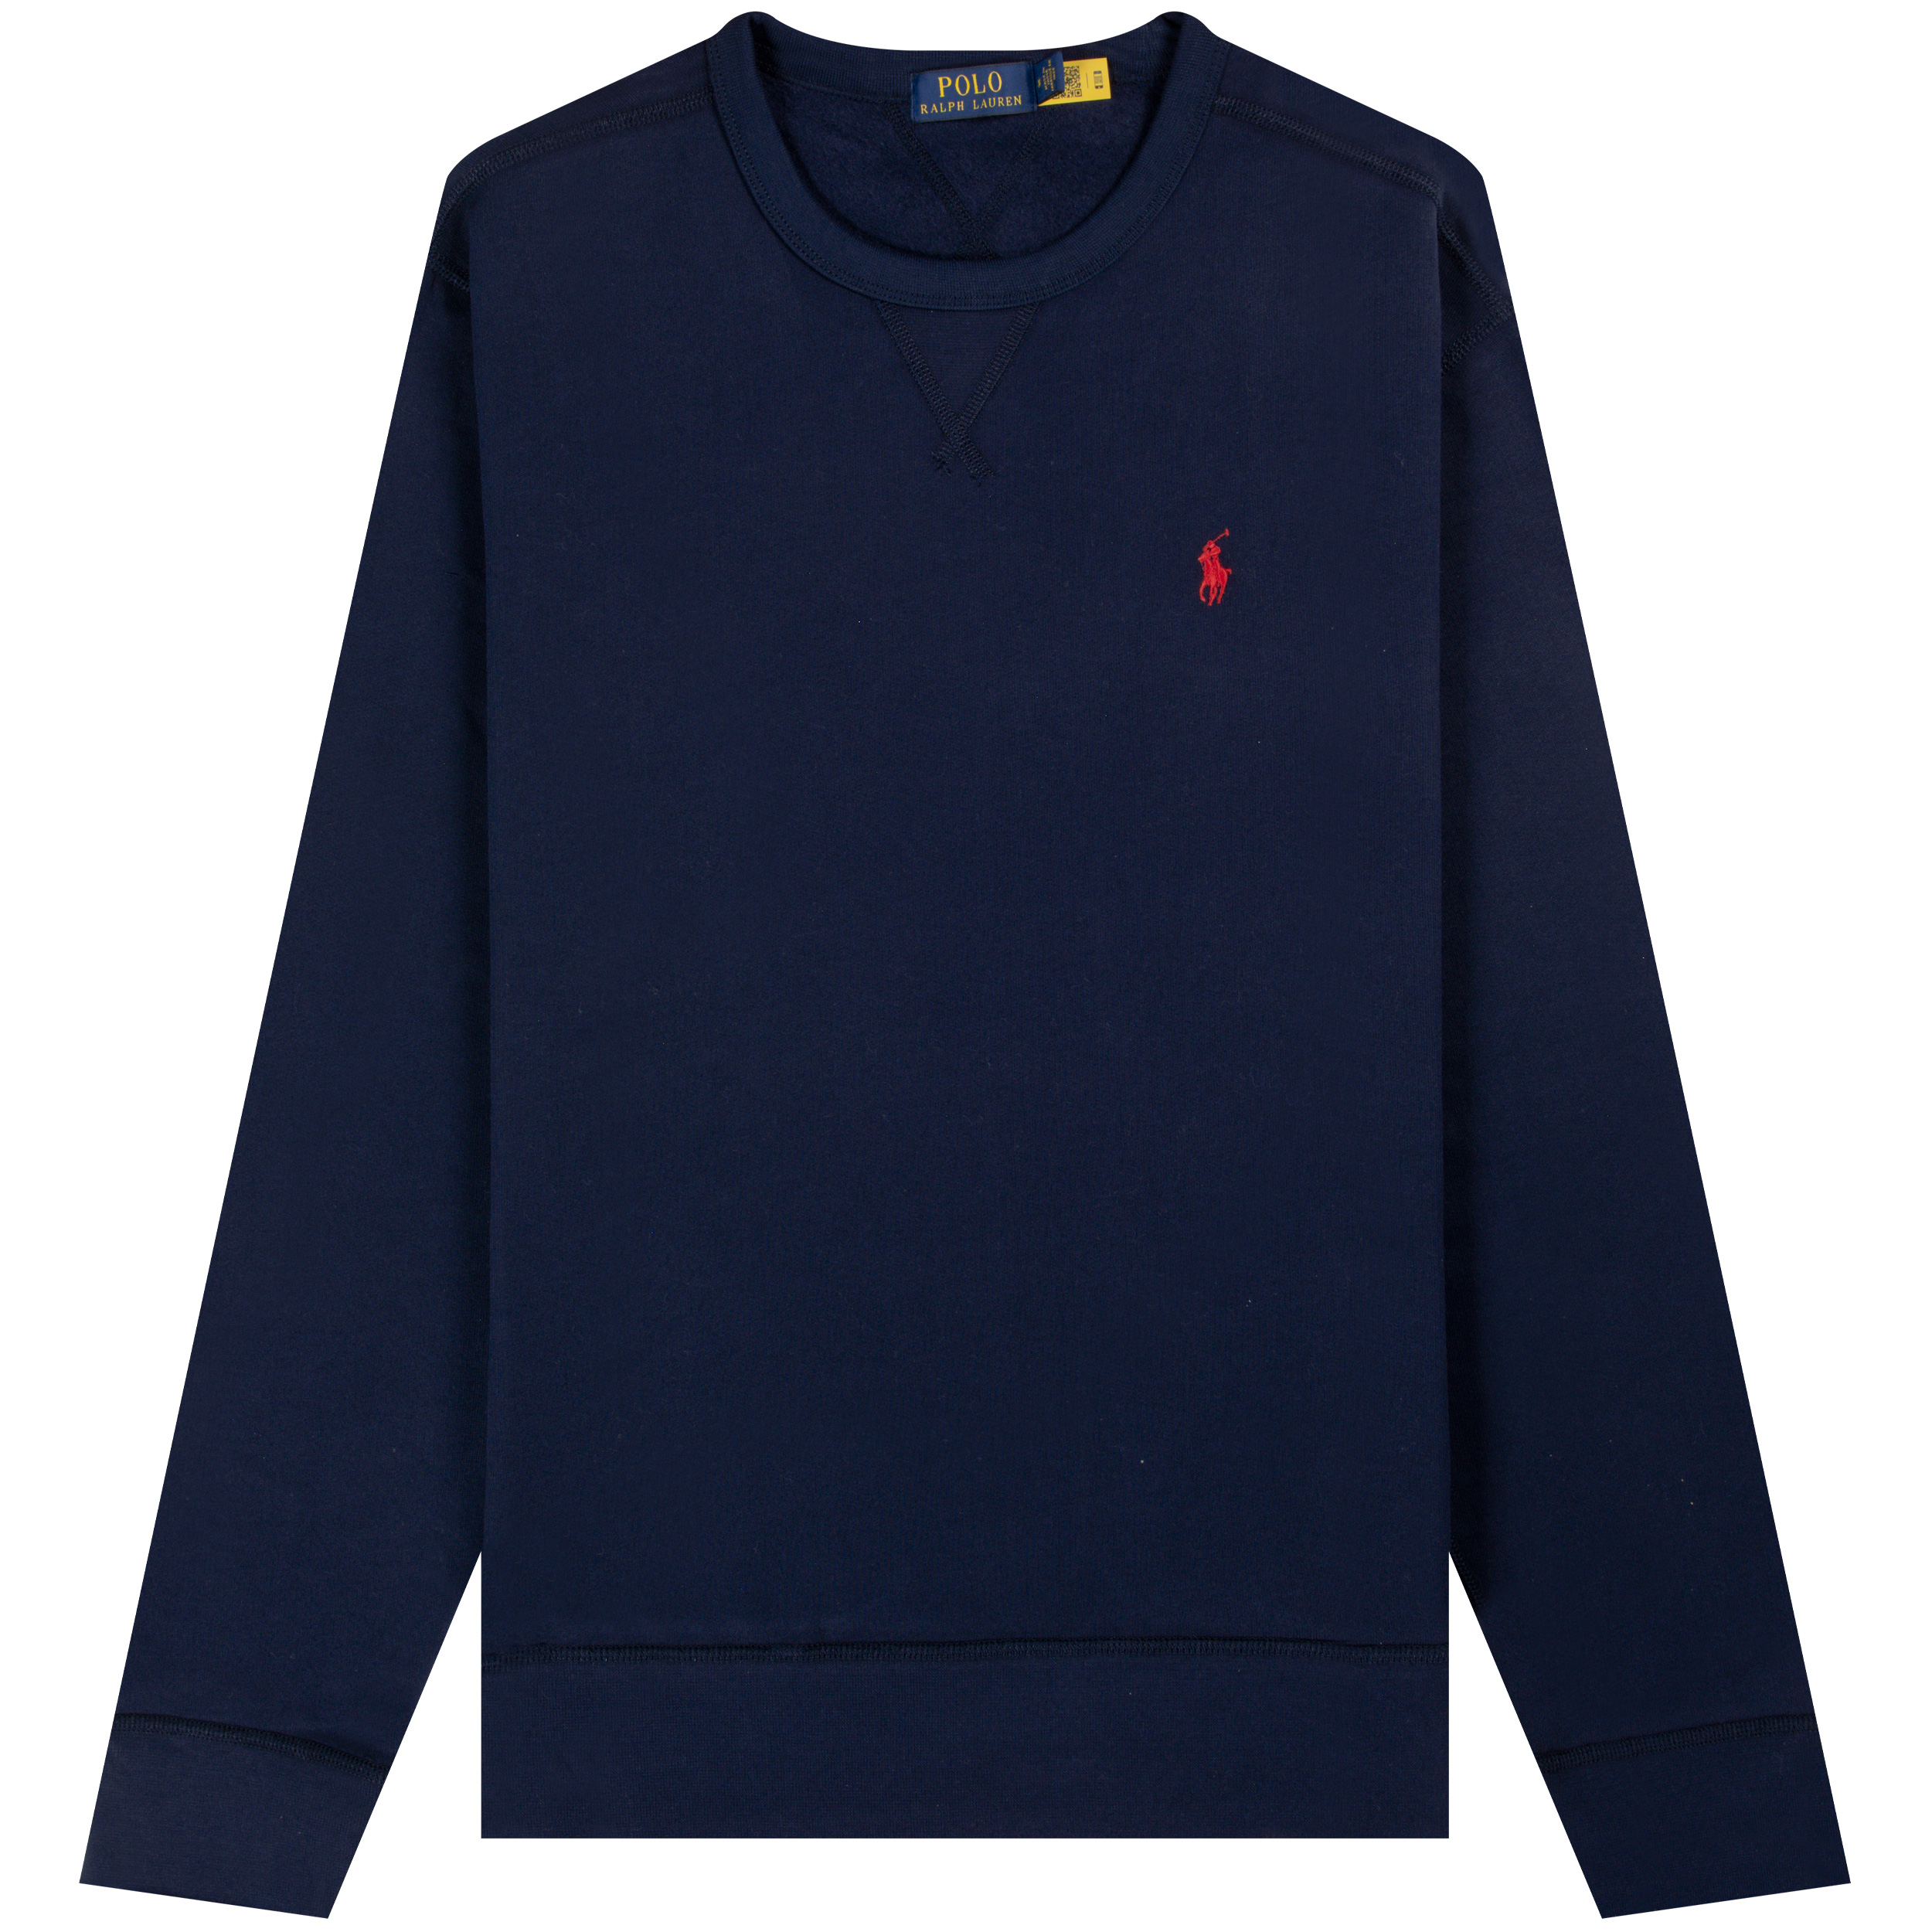 Polo Ralph Lauren ’Classic’ Crewneck Sweatshirt Navy